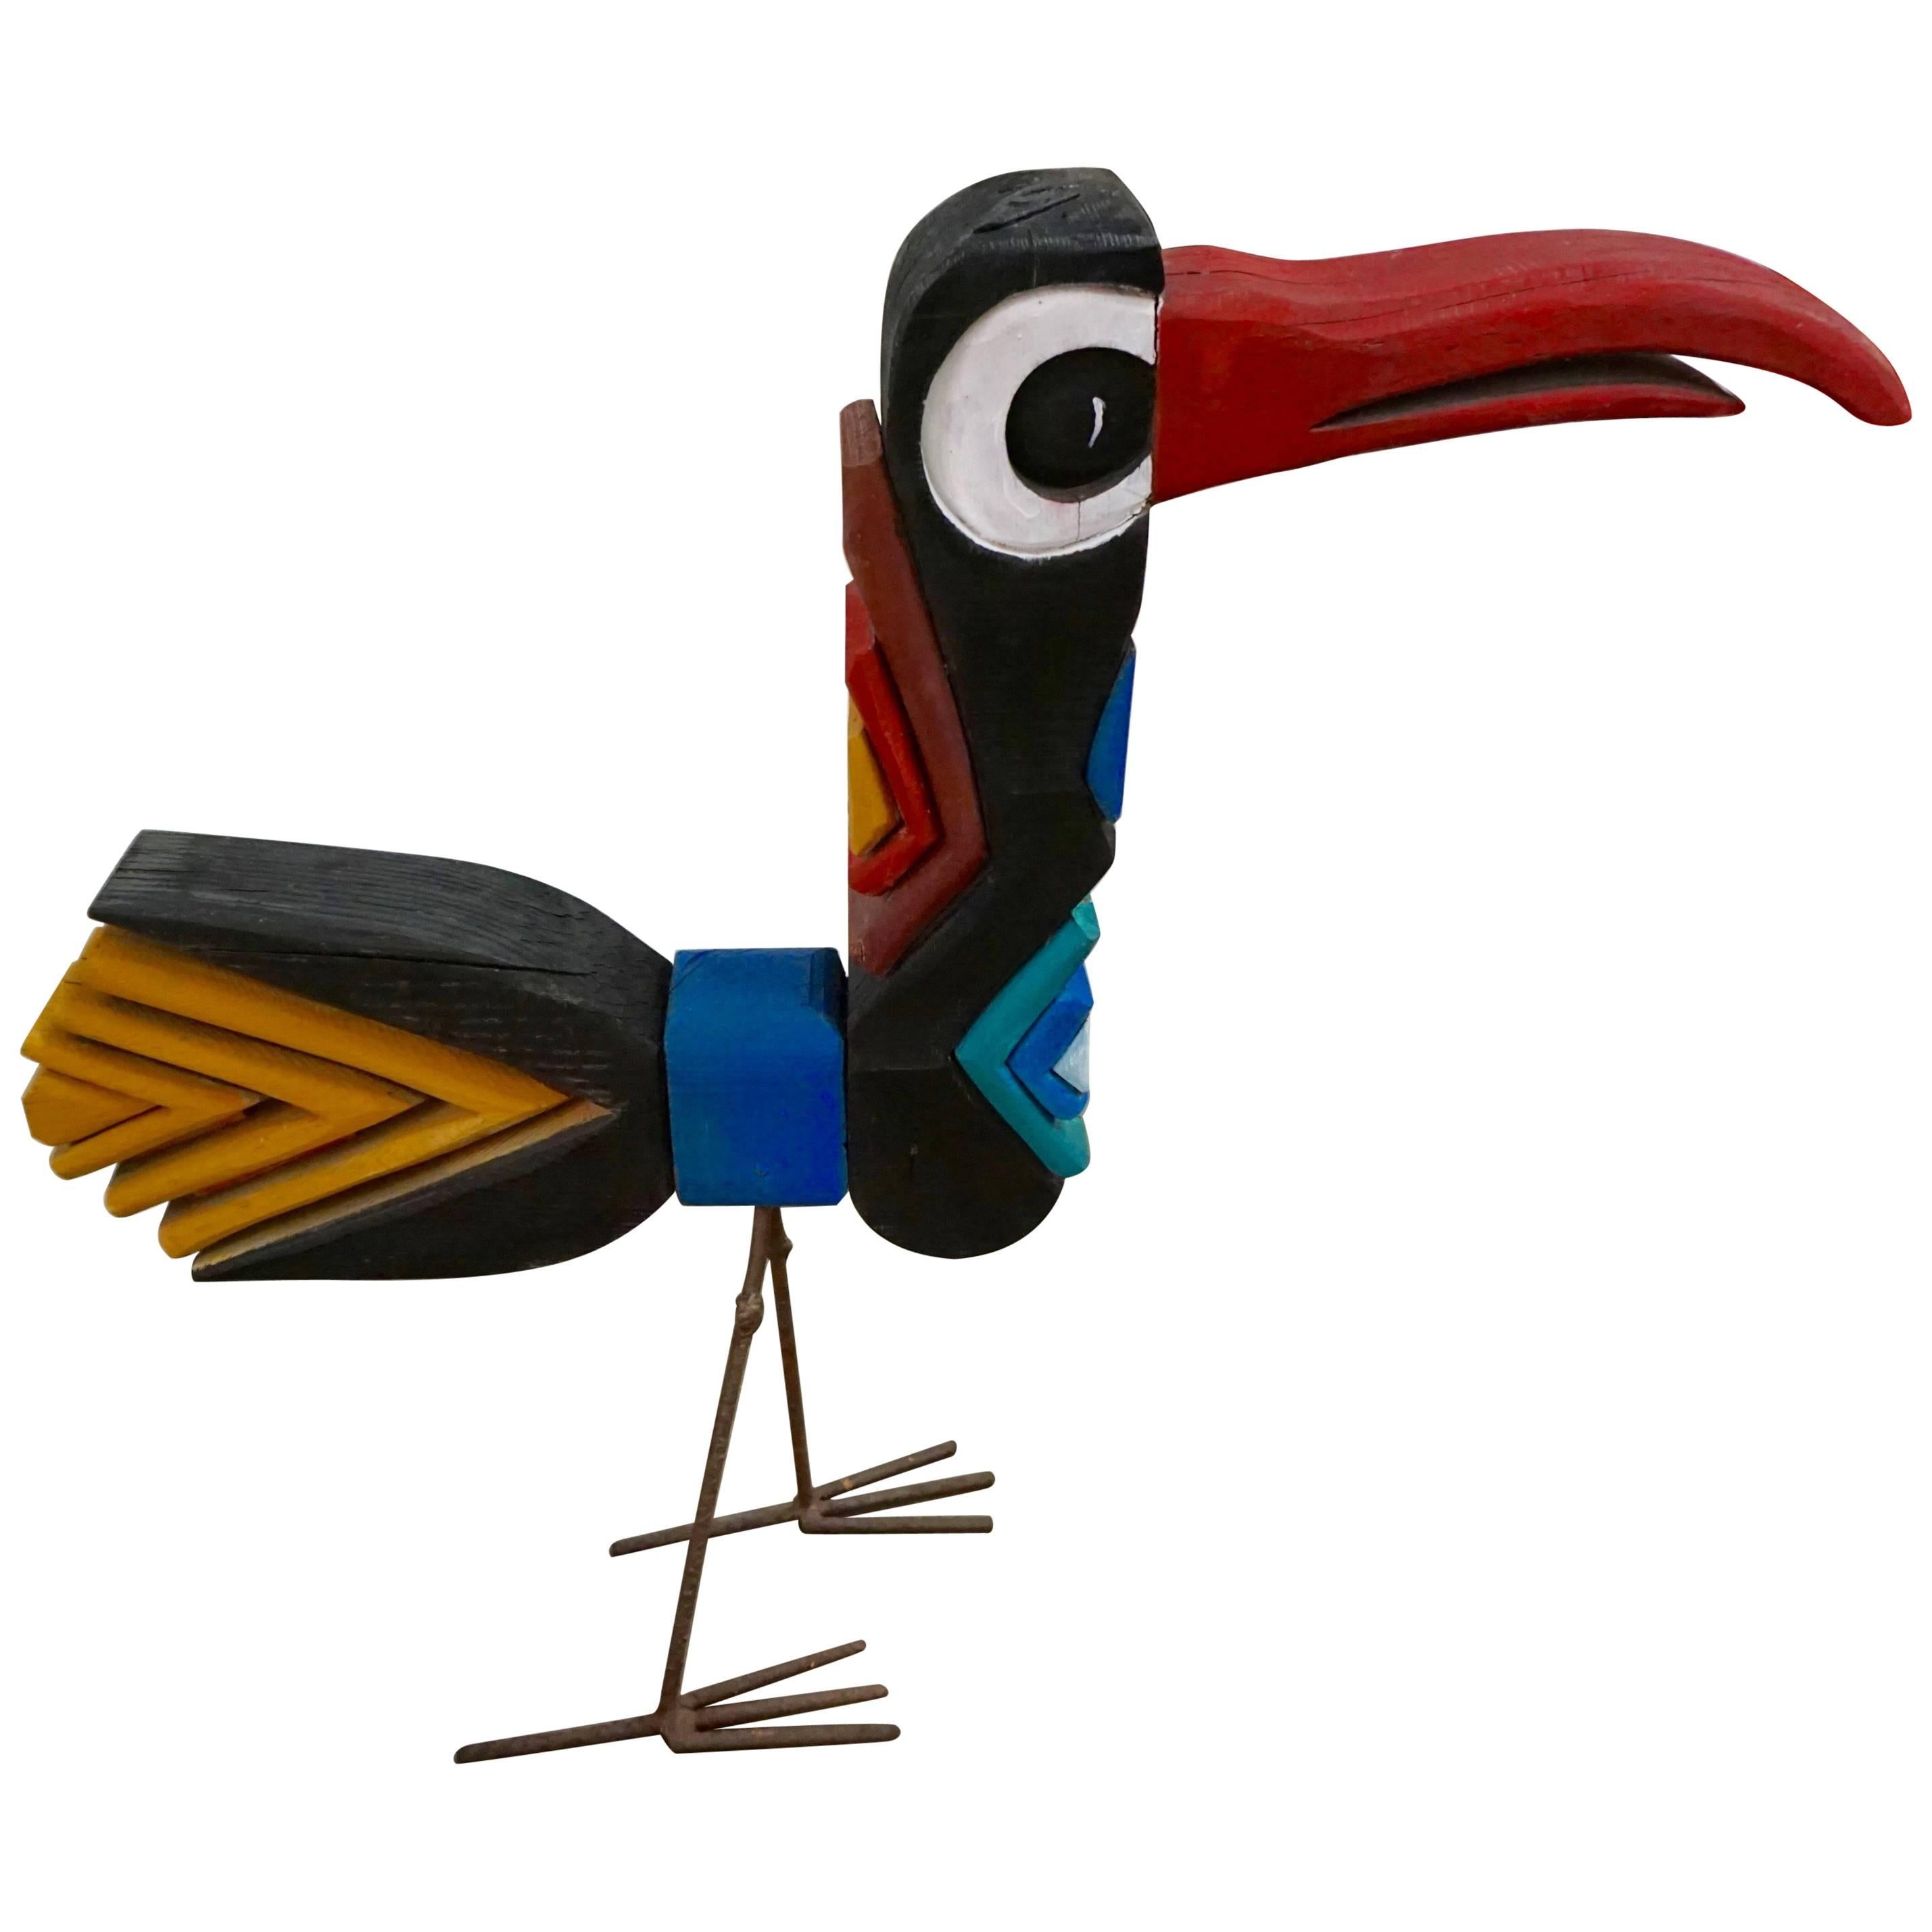 Colorful Folk Art Bird Sculpture